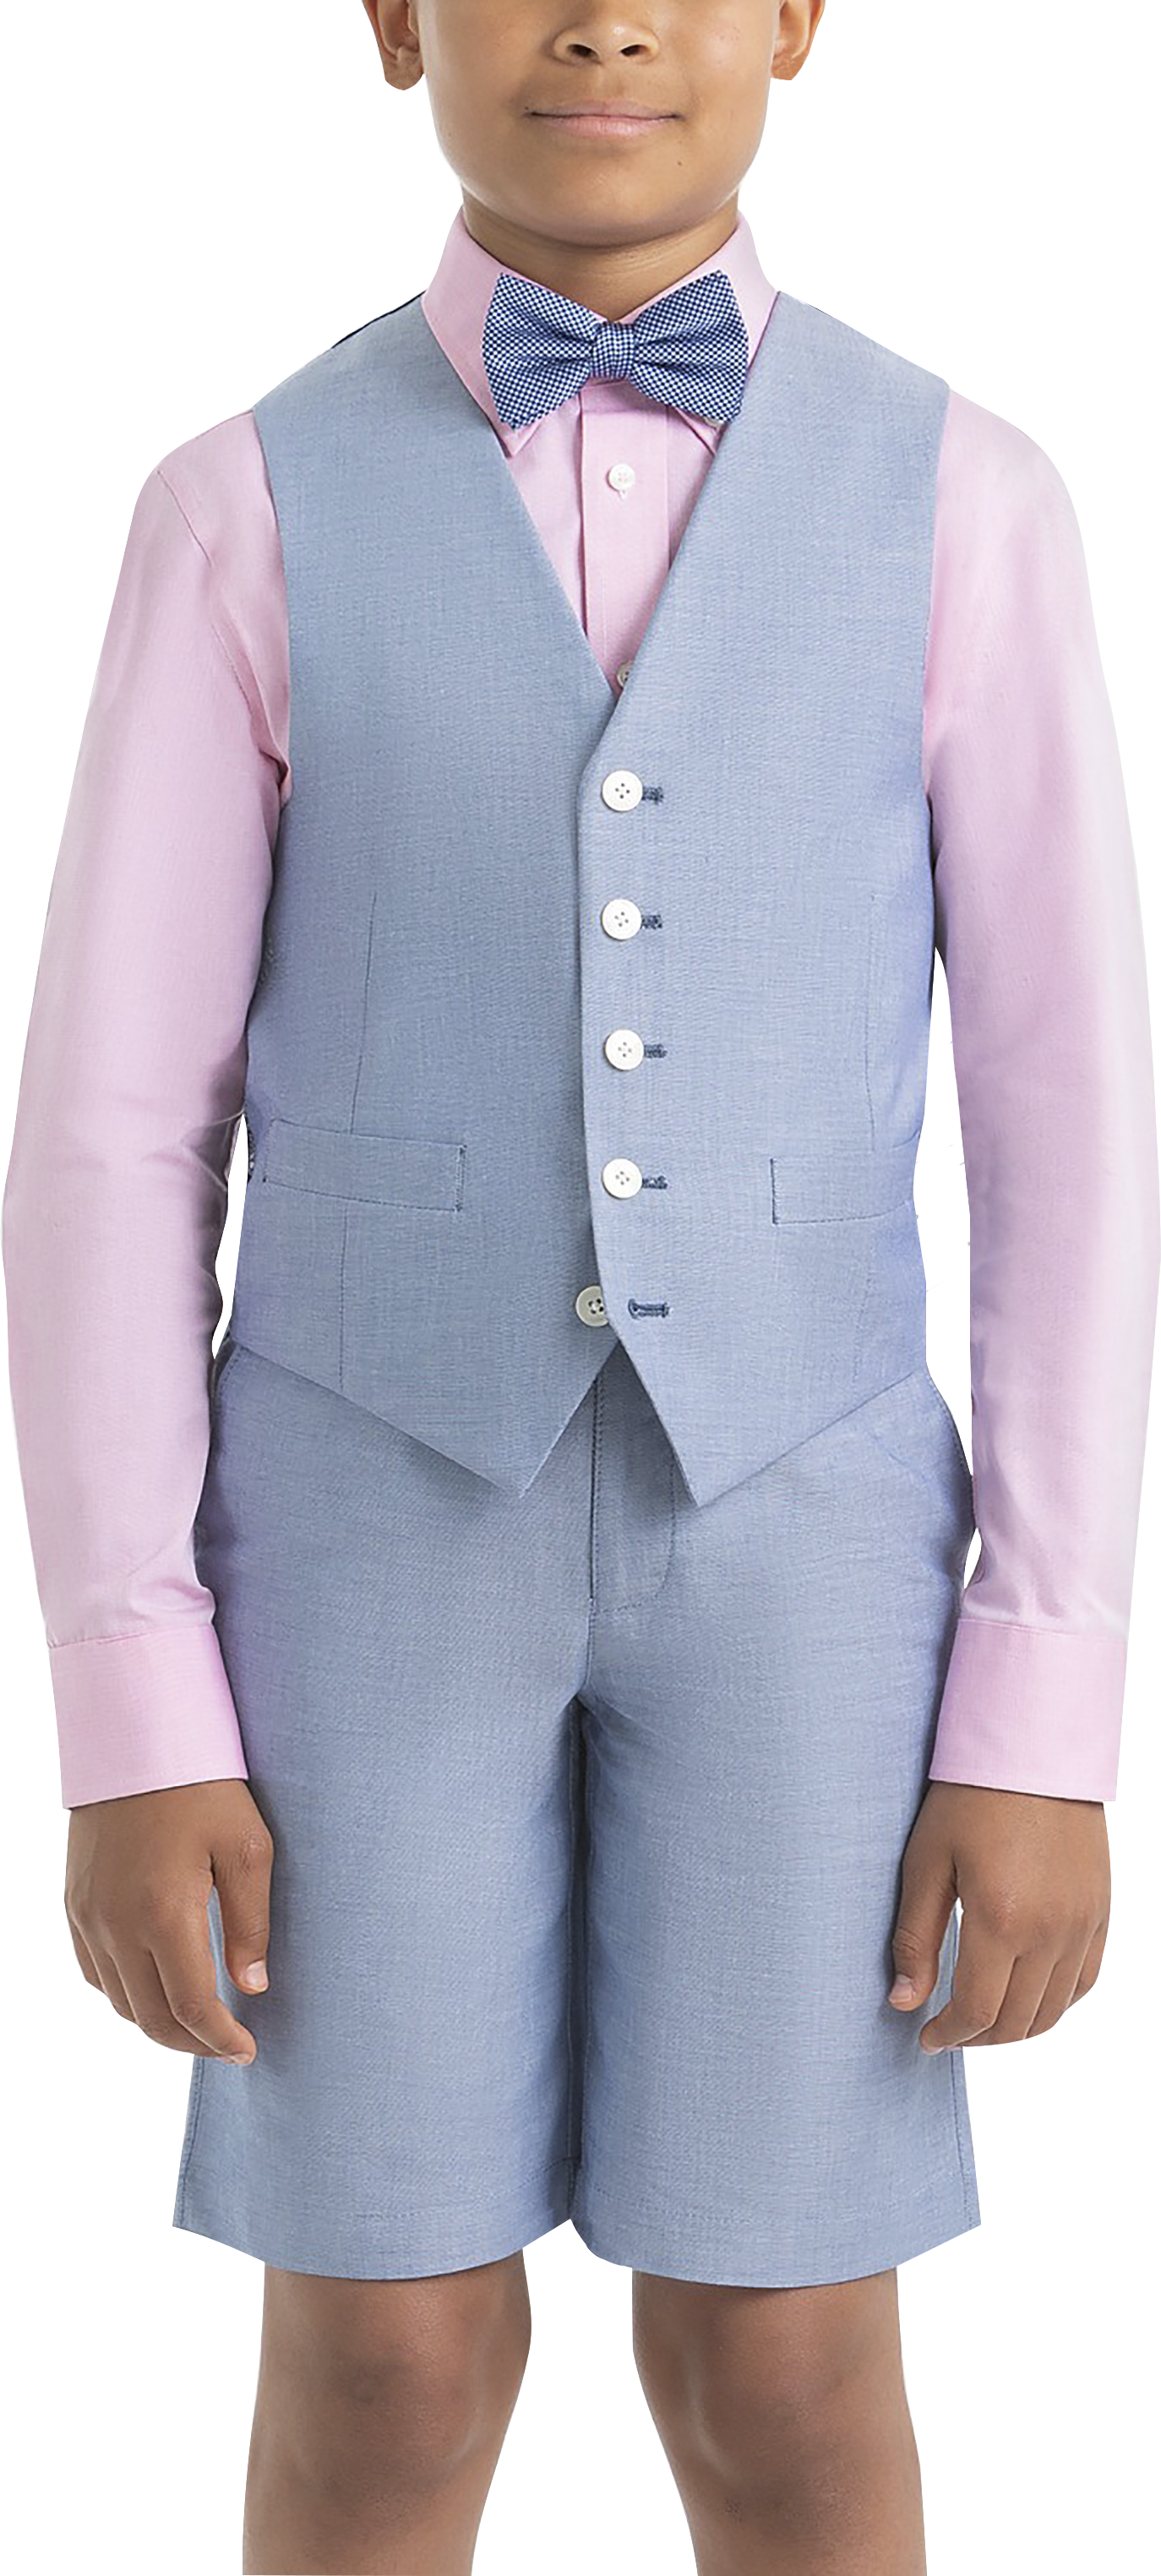 Lauren By Ralph Lauren Boys (Sizes 4-7) Suit Separates Vest, Light Blue Chambray